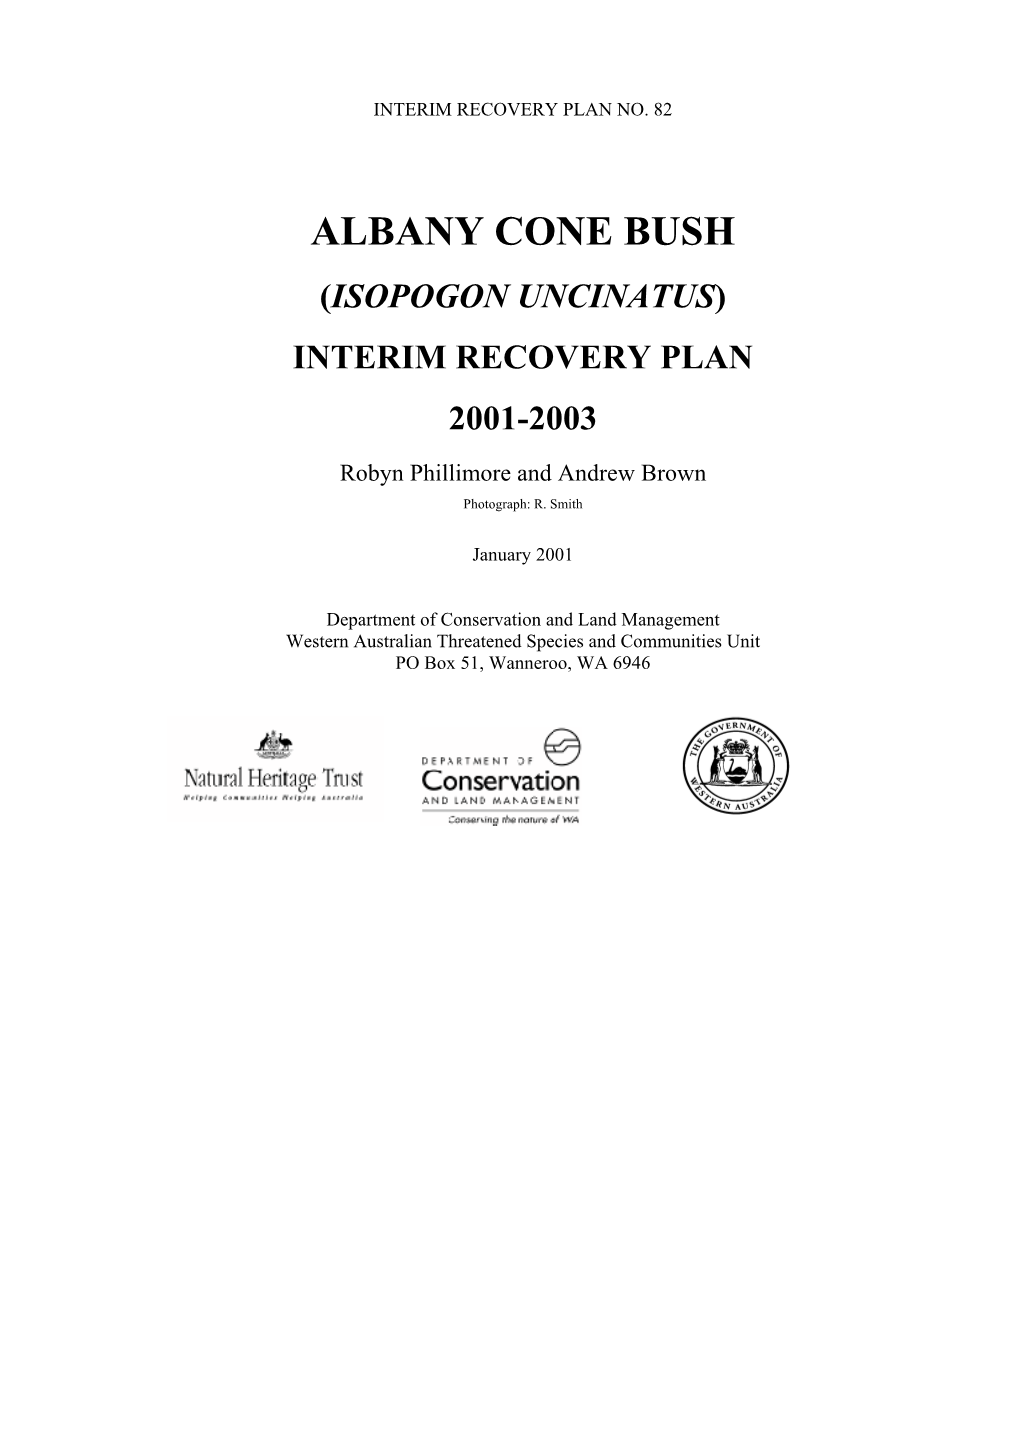 Albany Cone Bush (Isopogon Unicinatus) Interim Recovery Plan